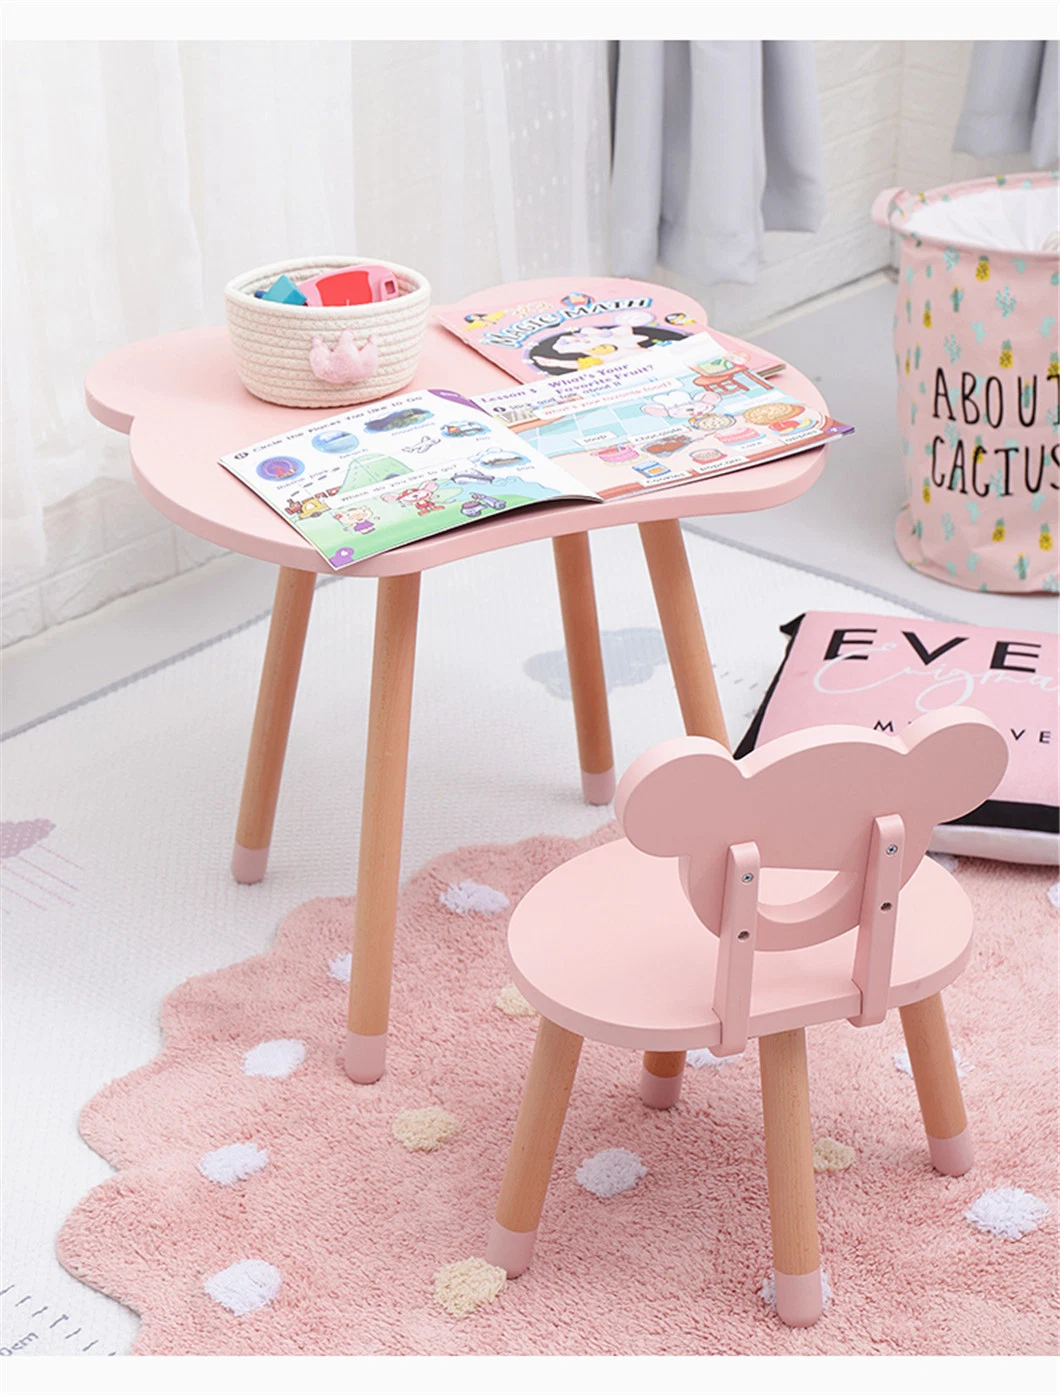 Petit Ours à la maternelle Kids Table et chaise en bois Meubles de définir ensemble les enfants